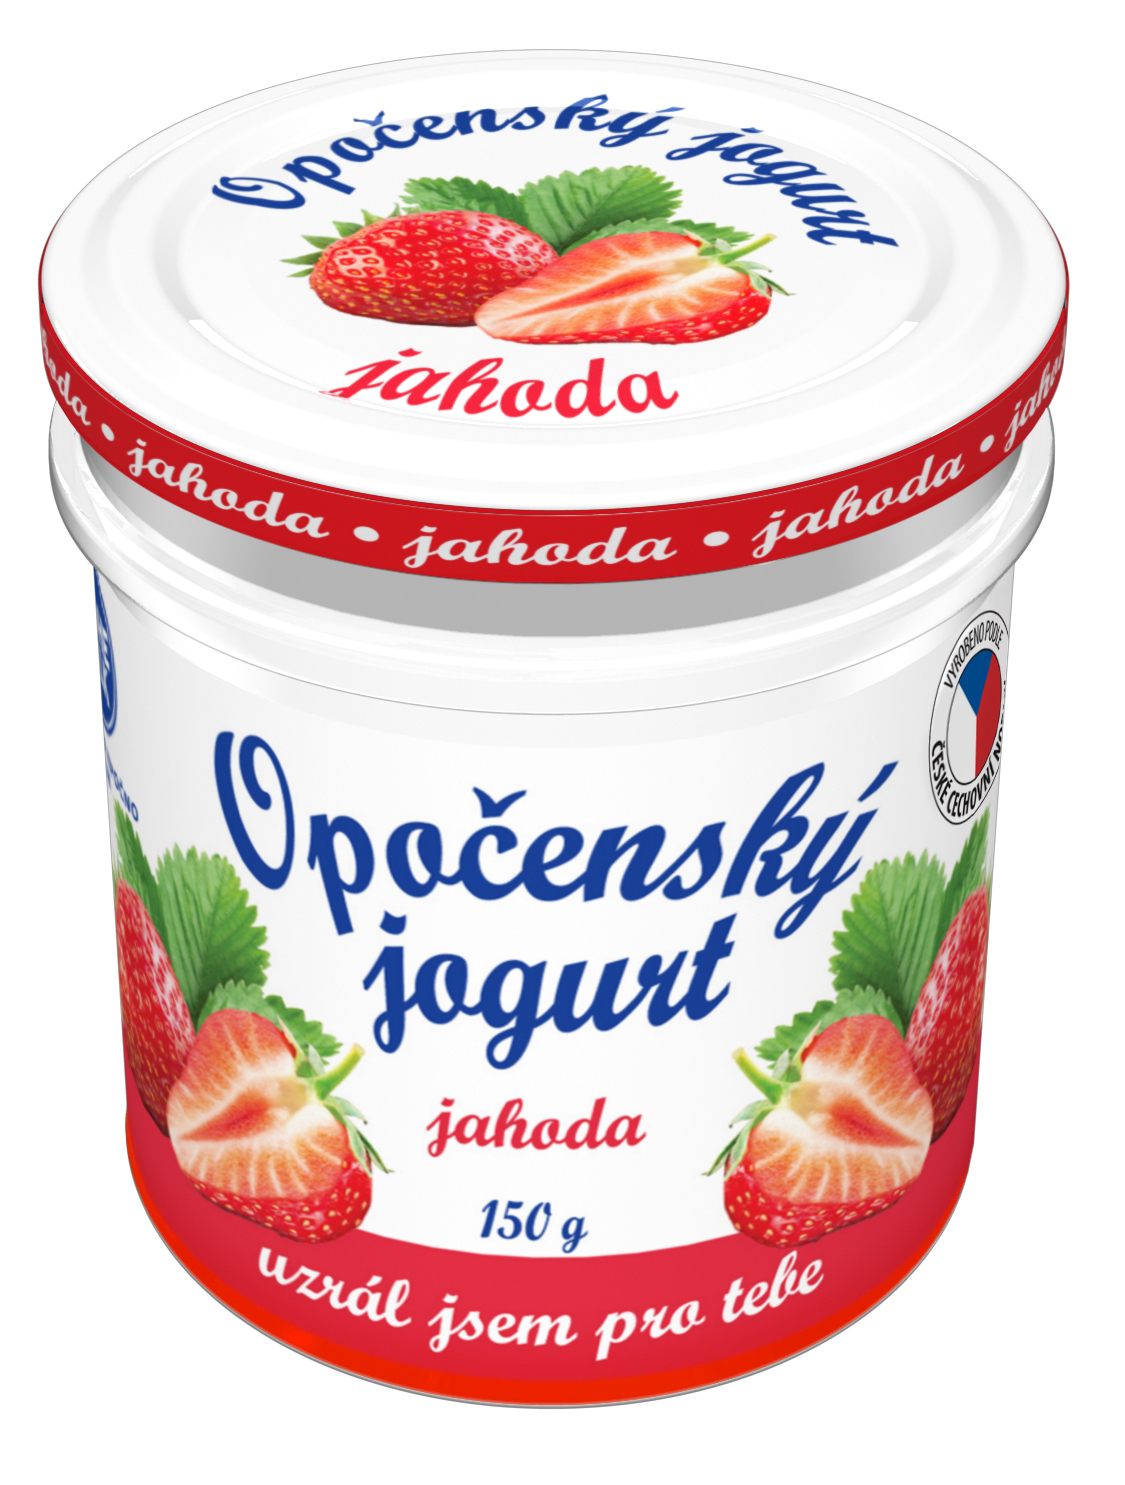 Opočenský jogurt JAHODA